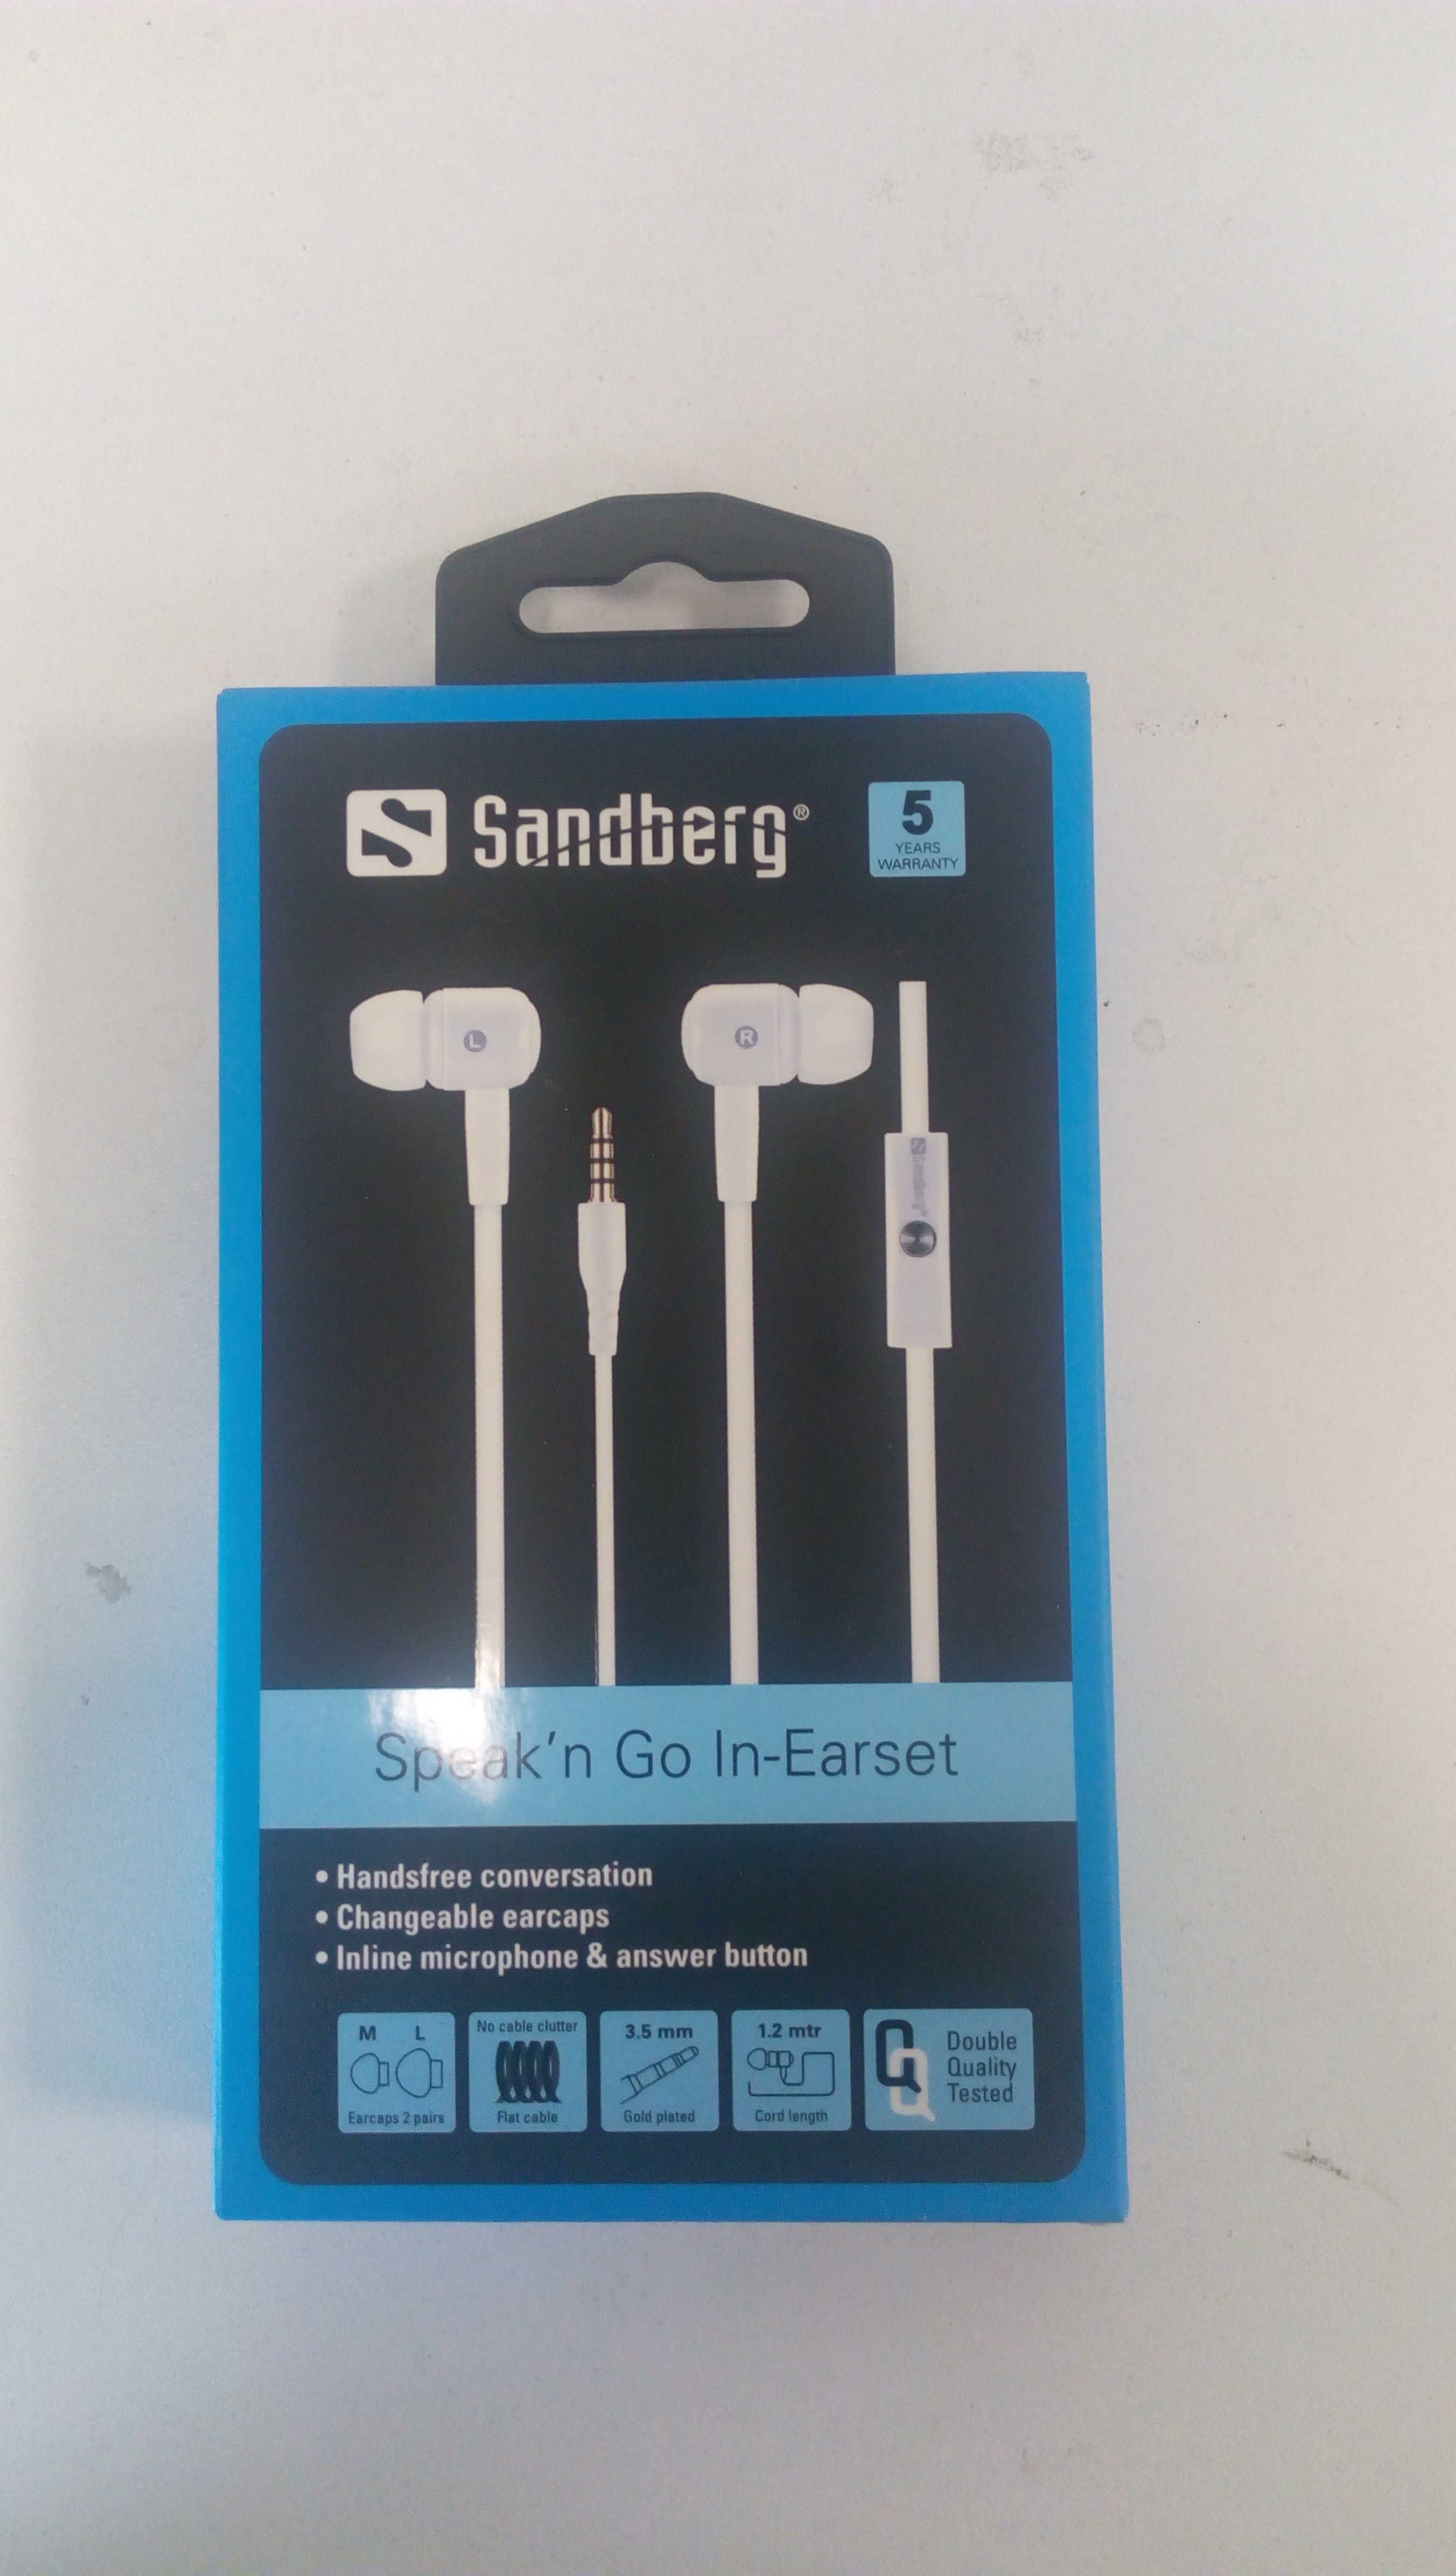 Аудио слушалки Sandberg Speak’n Go In-Earset, бели